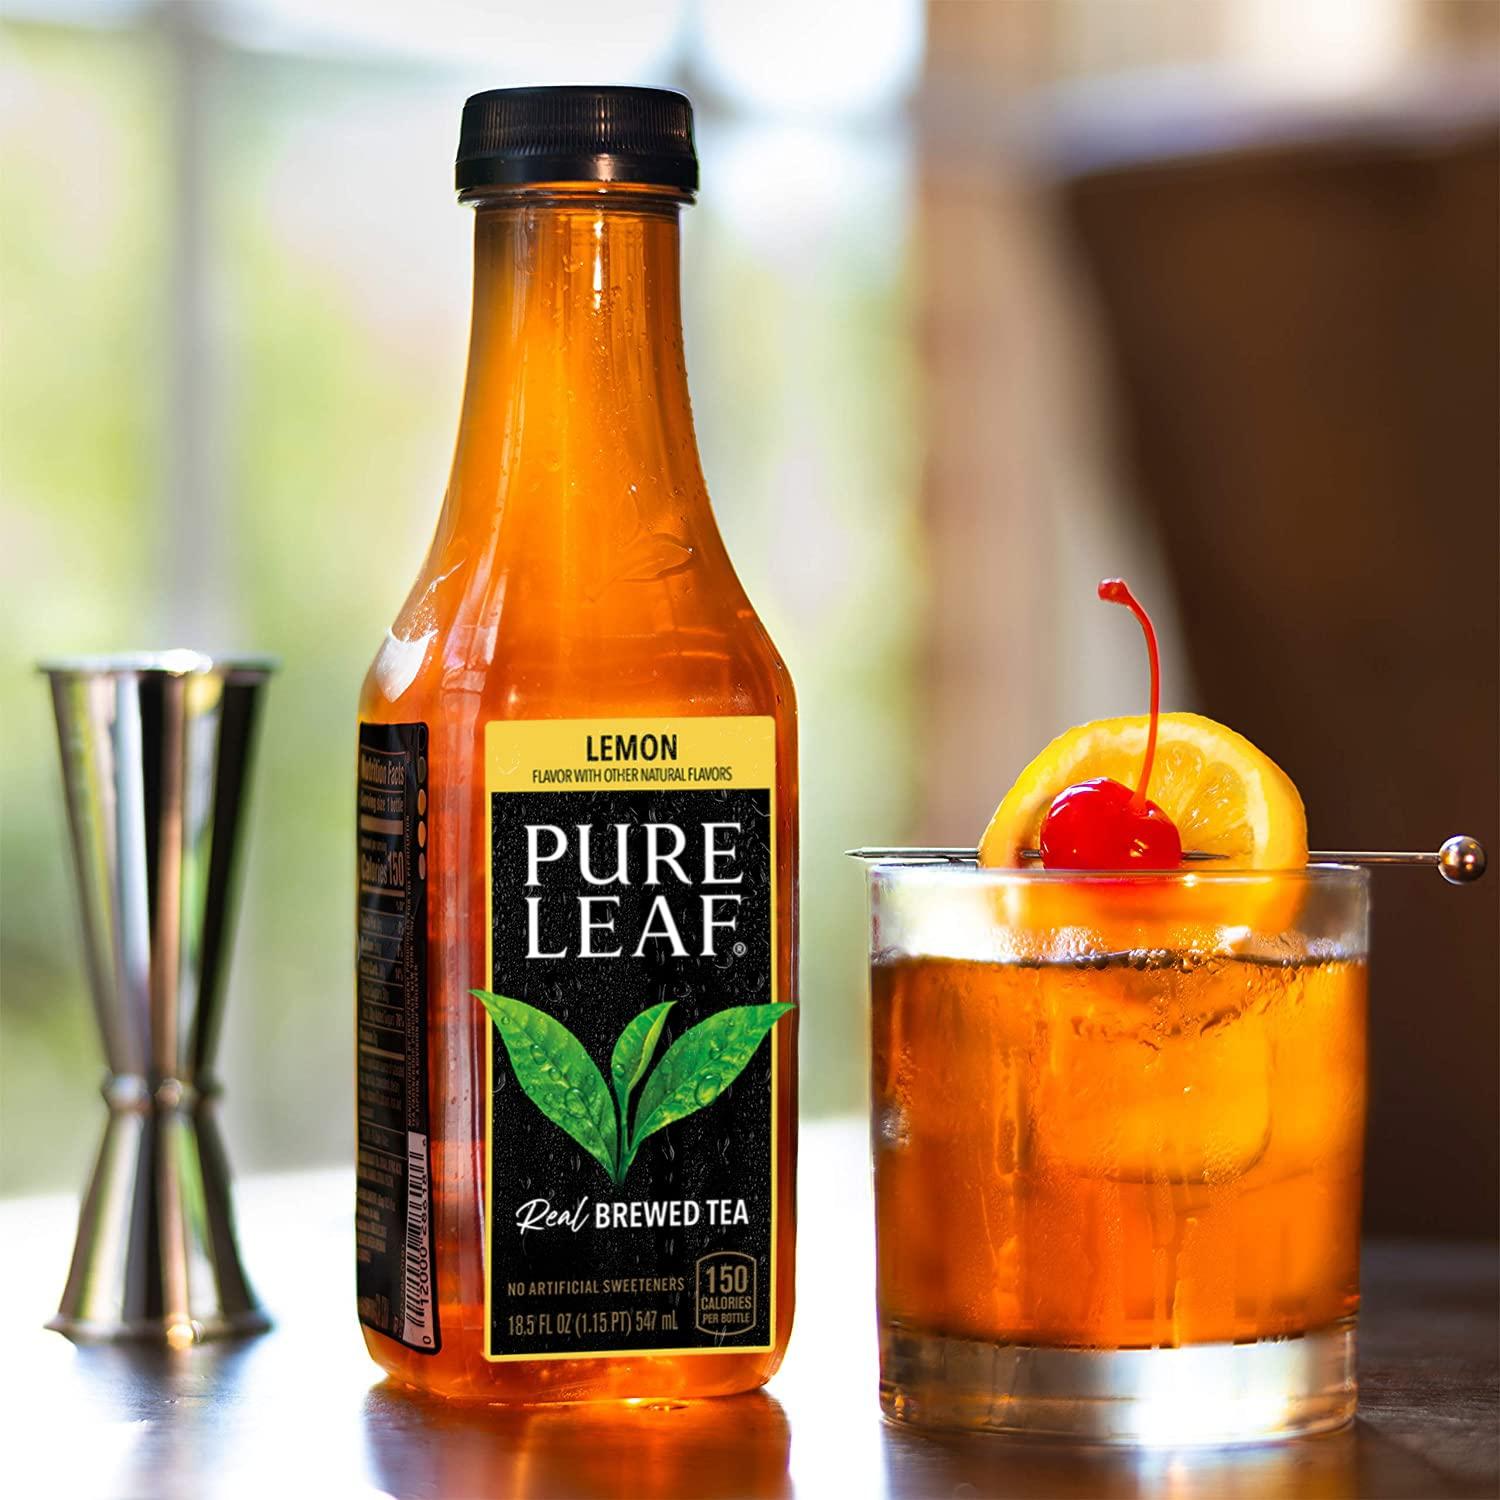 Pure Leaf Iced Tea, Sweetened Variety Pack, 18.5 fl oz. bottles (12 Pack)  Sweetened Variety Pack 18.5 Fl Oz (Pack of 12)